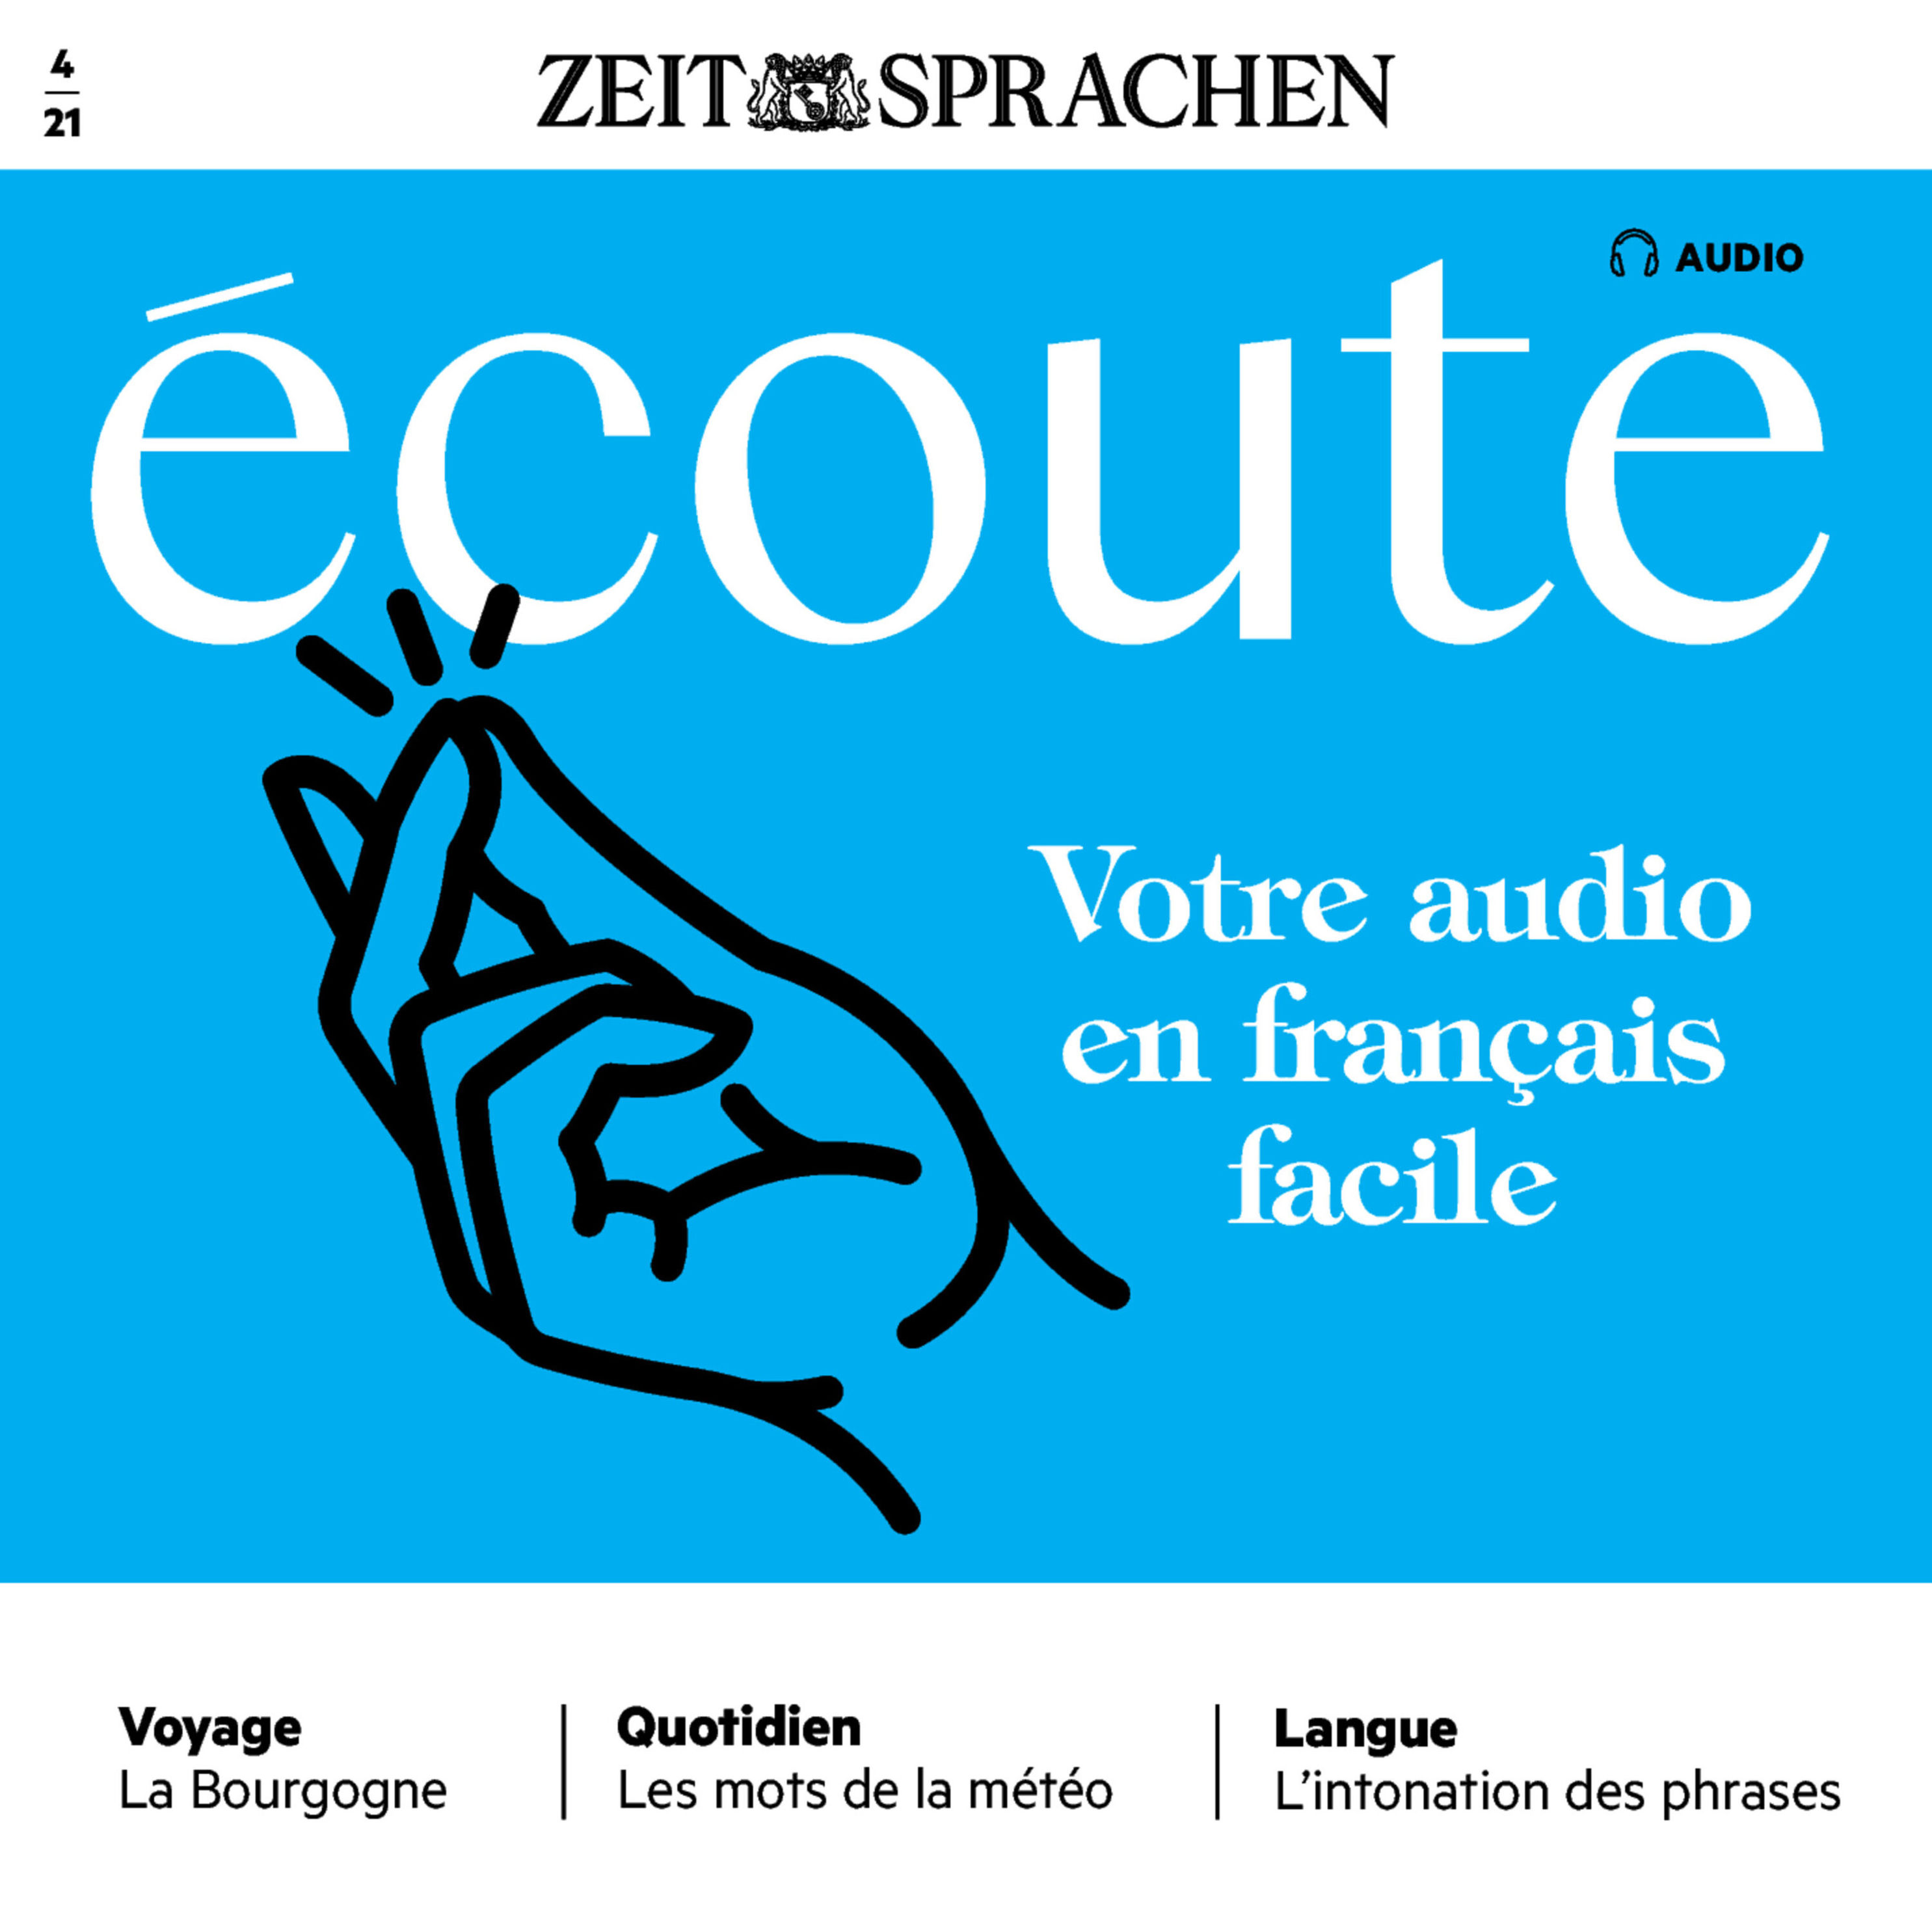 Französisch lernen Audio - Ihr Audiotrainer in einfachem Französisch  Hörbuch Download